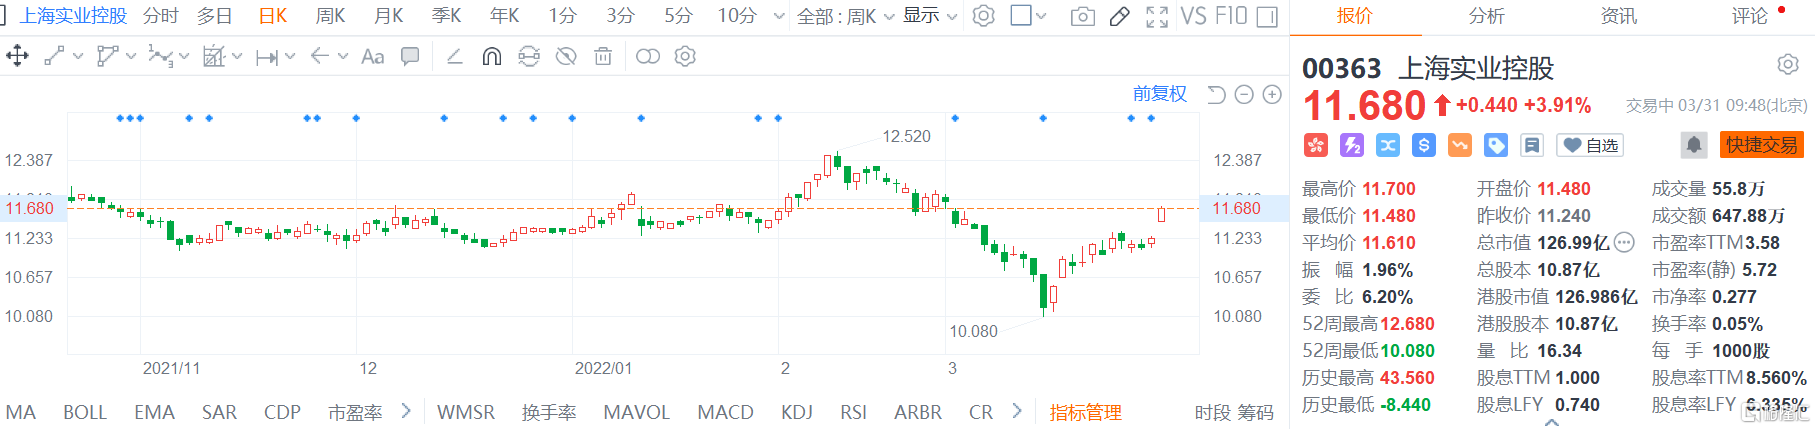 上海实业控股(0363.HK)高开高走 现报11.68港元涨幅3.9%